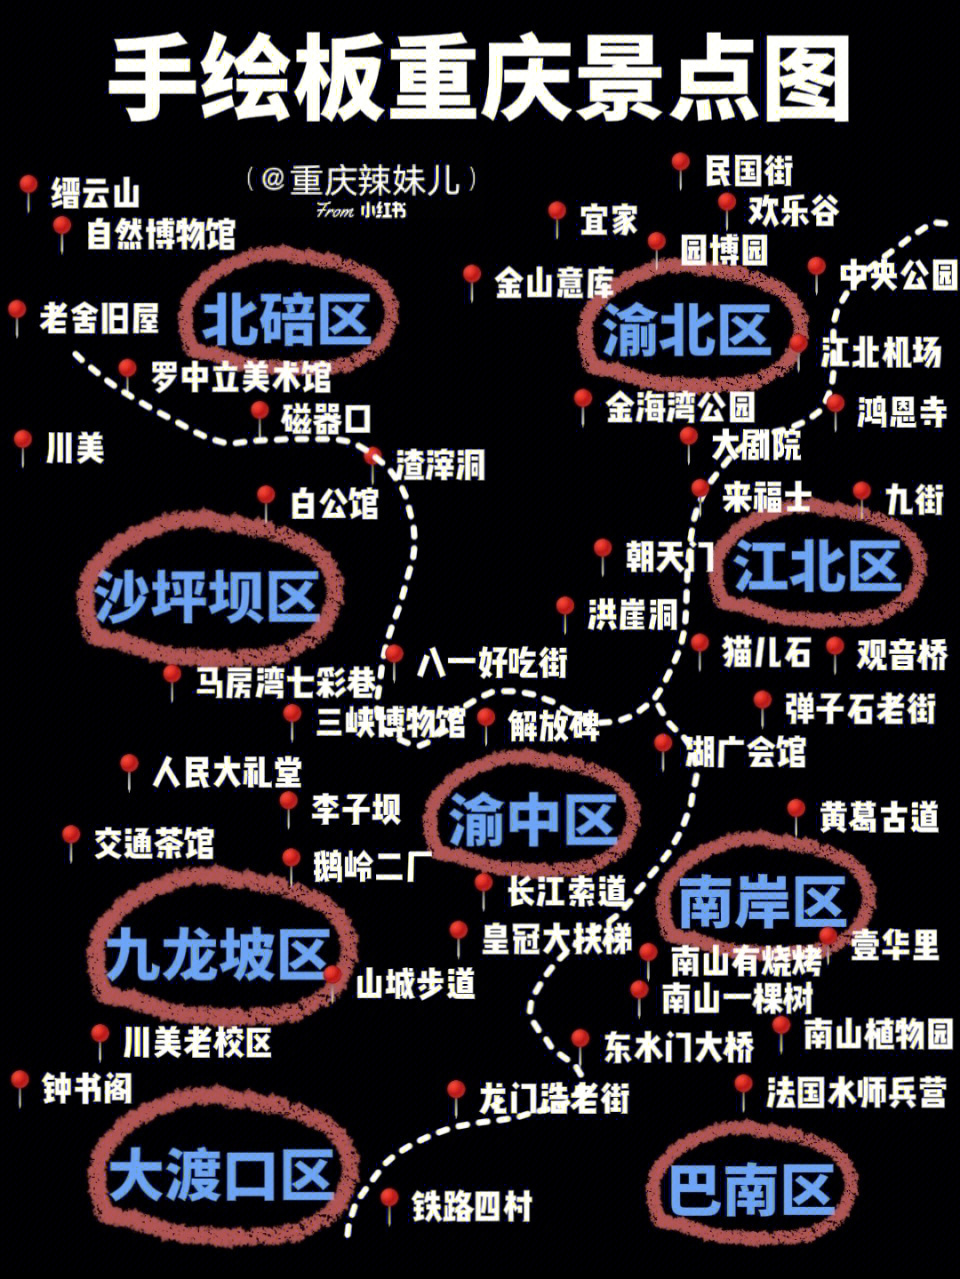 重庆解放碑实景地图图片